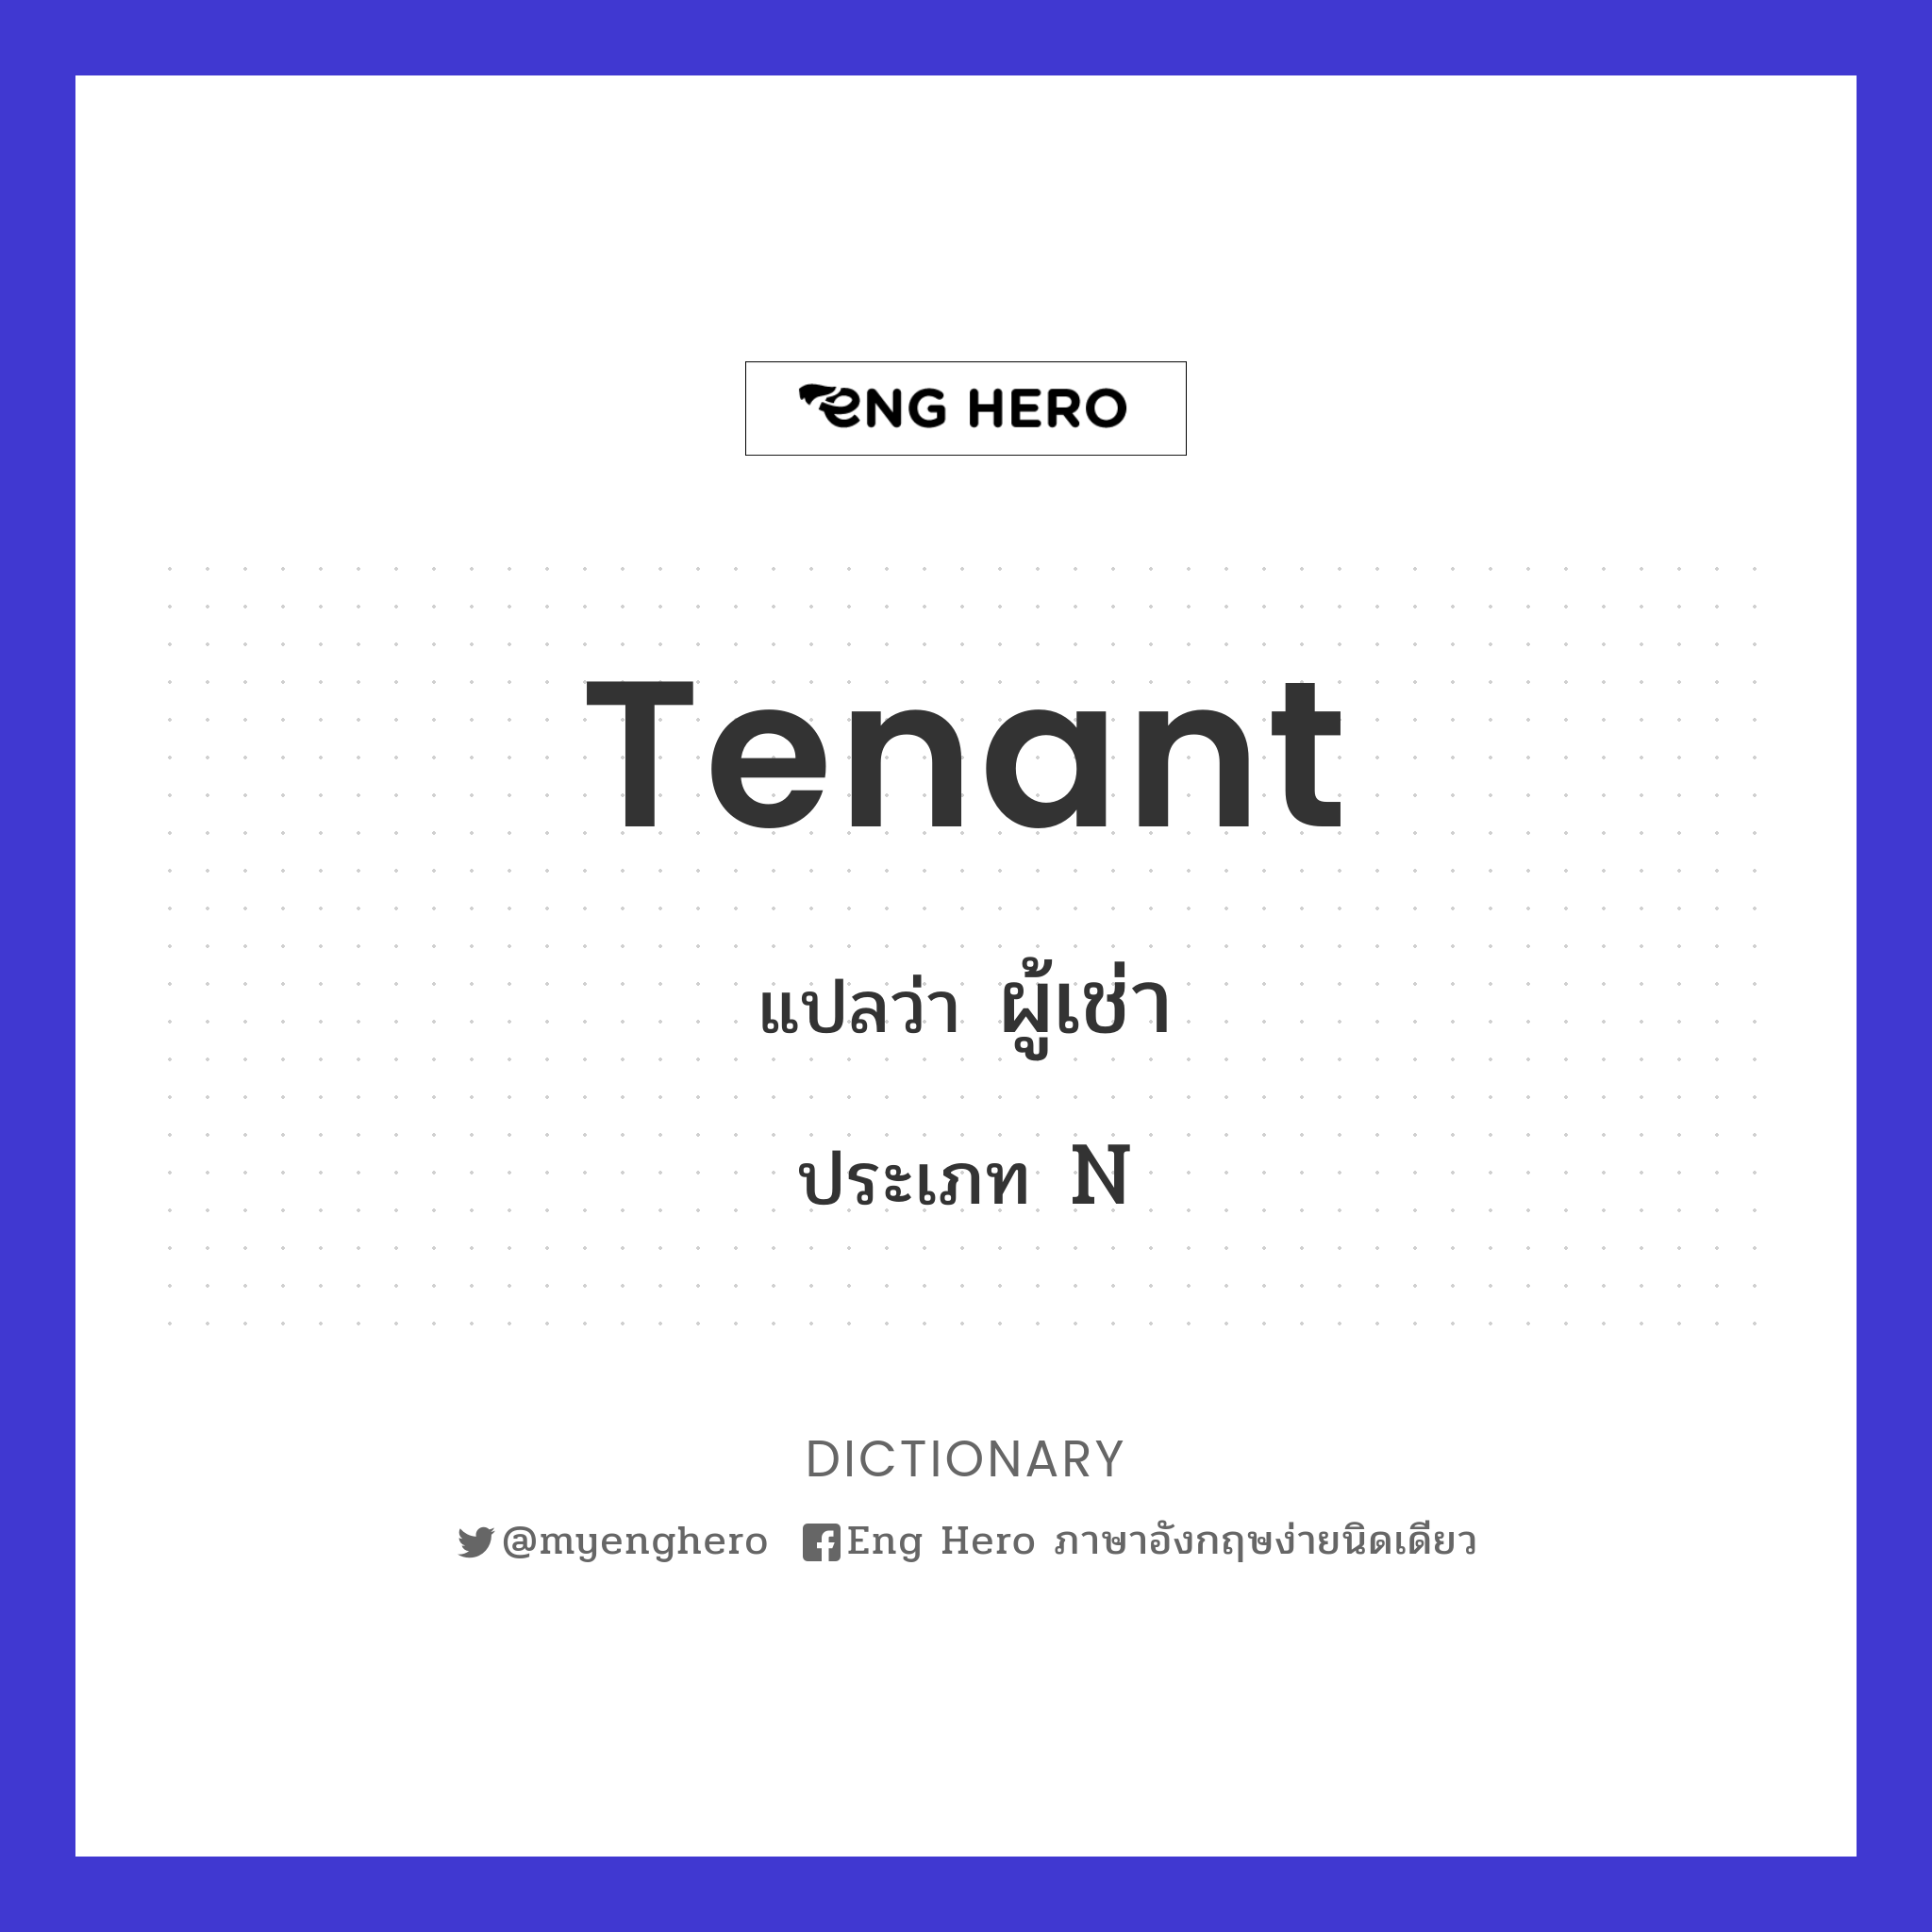 tenant